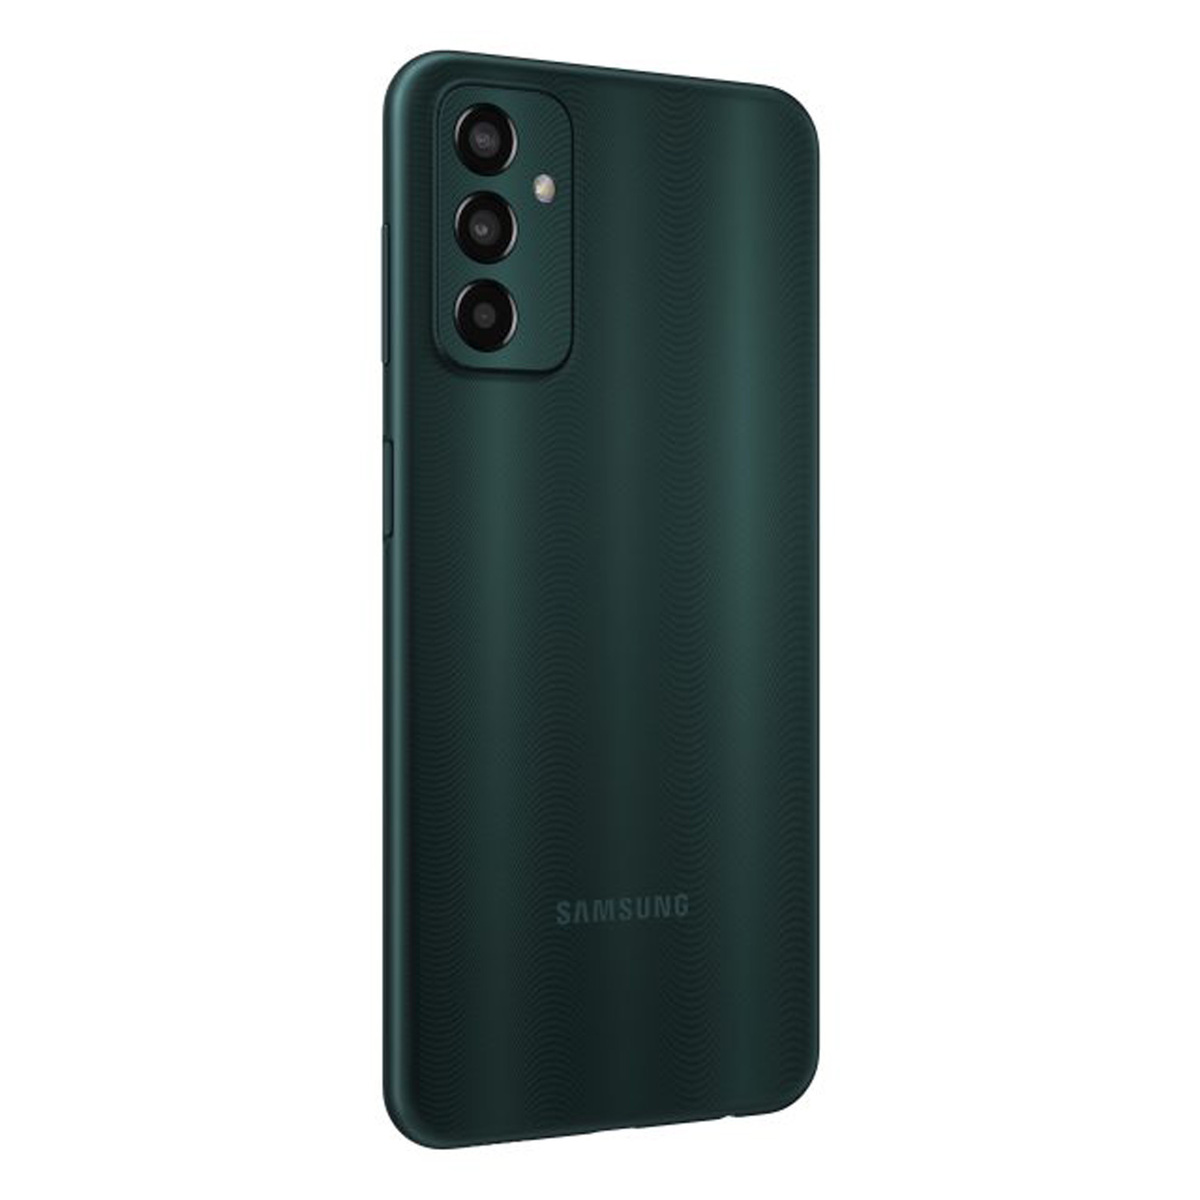 SAMSUNG Galaxy M13 4G, Deep Green (SM-M135FZGDMEA), 4 GB RAM, 64 GB Storage